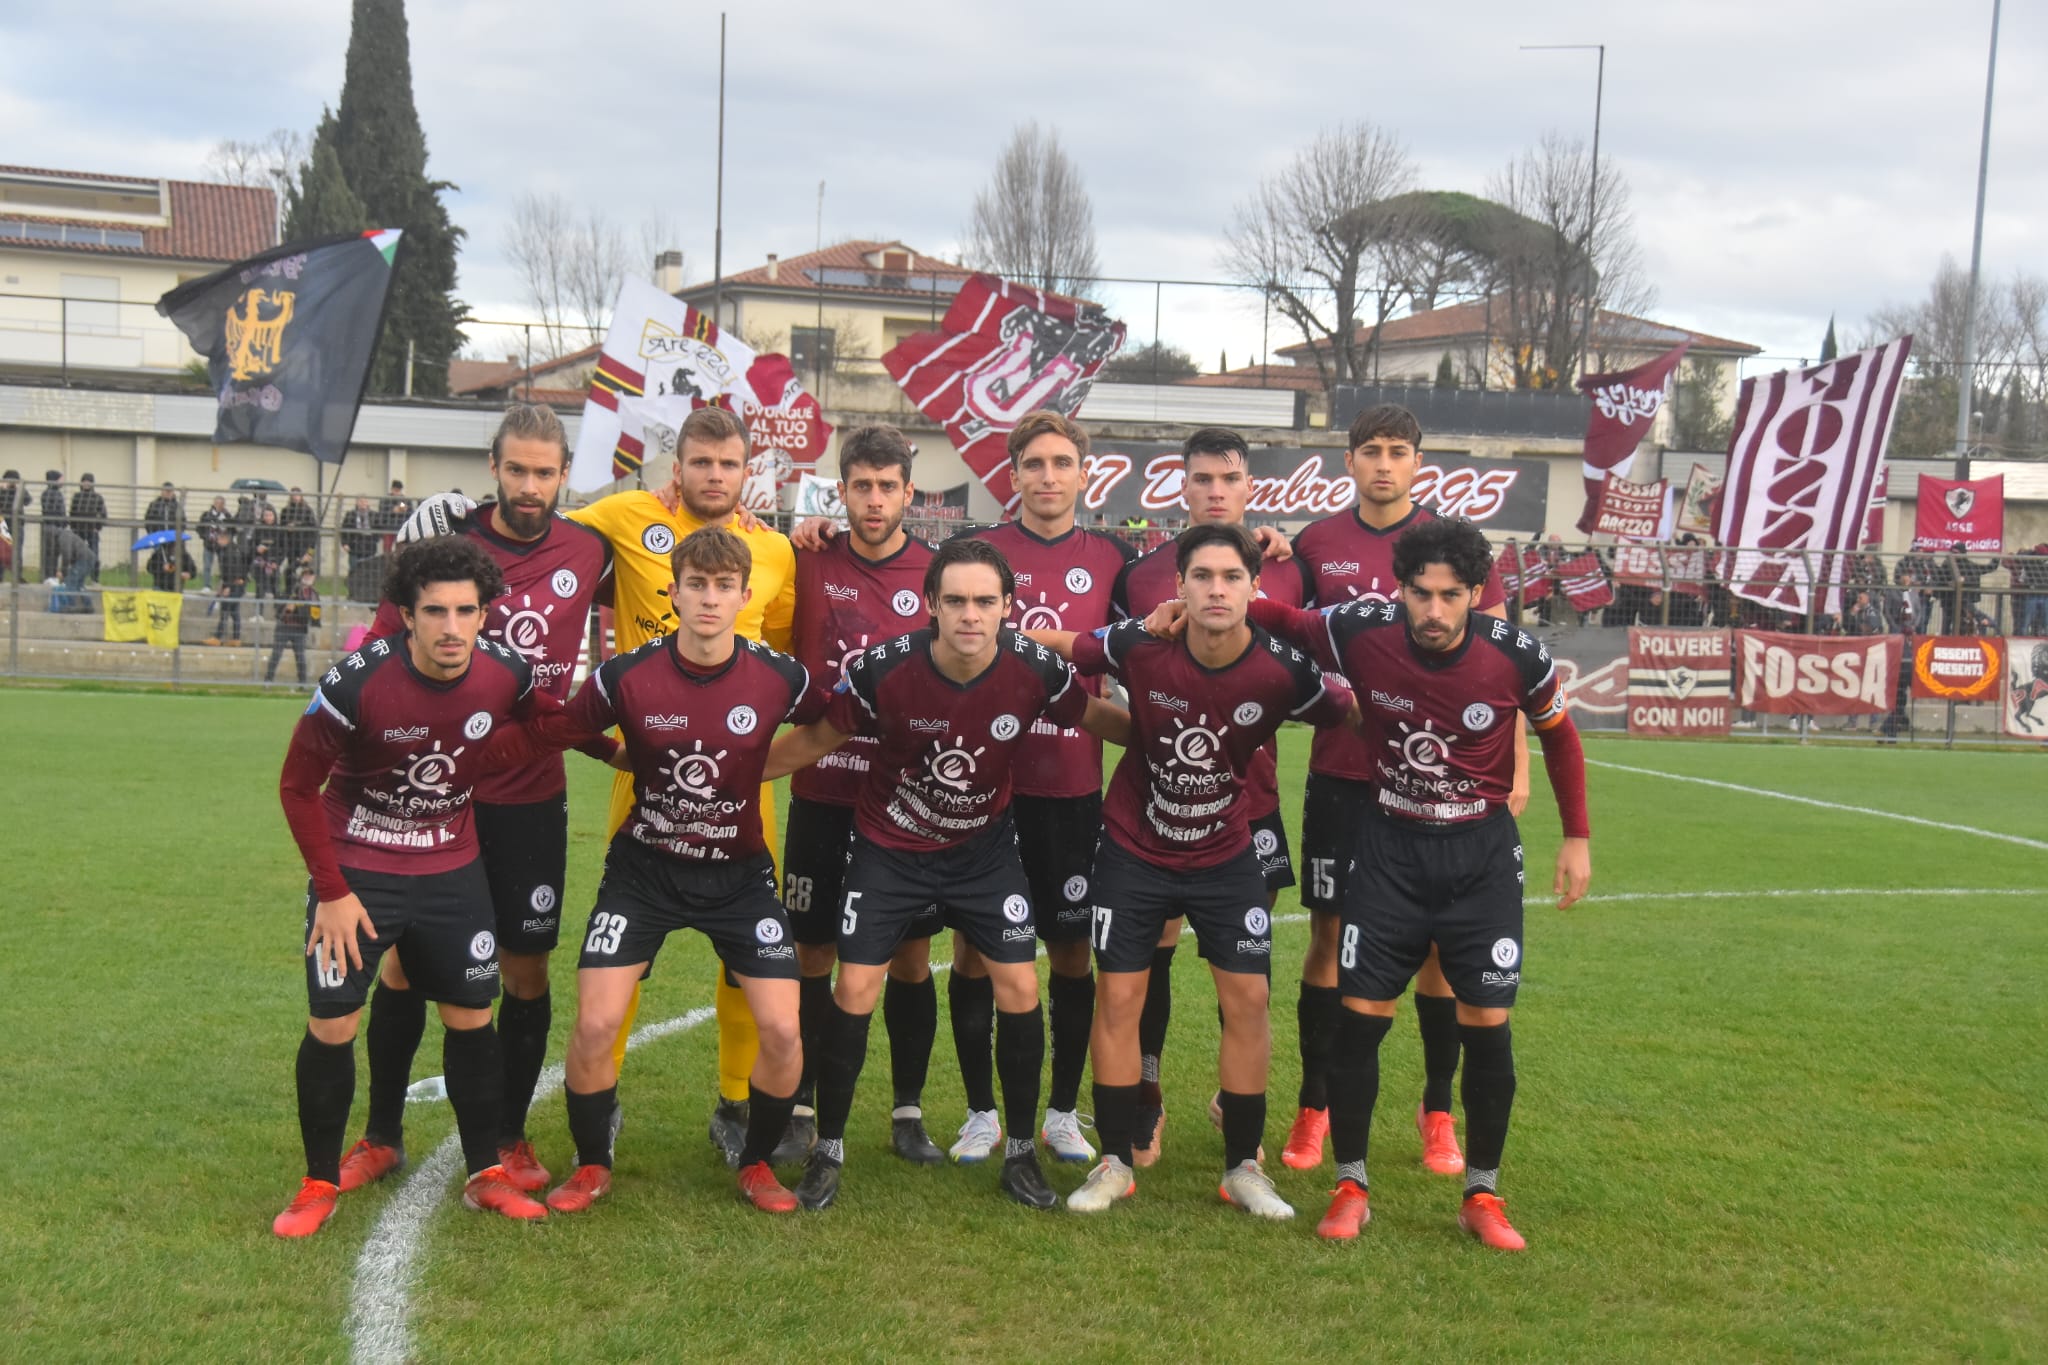 Calcio: Sporting Trestina 1 – Arezzo 1